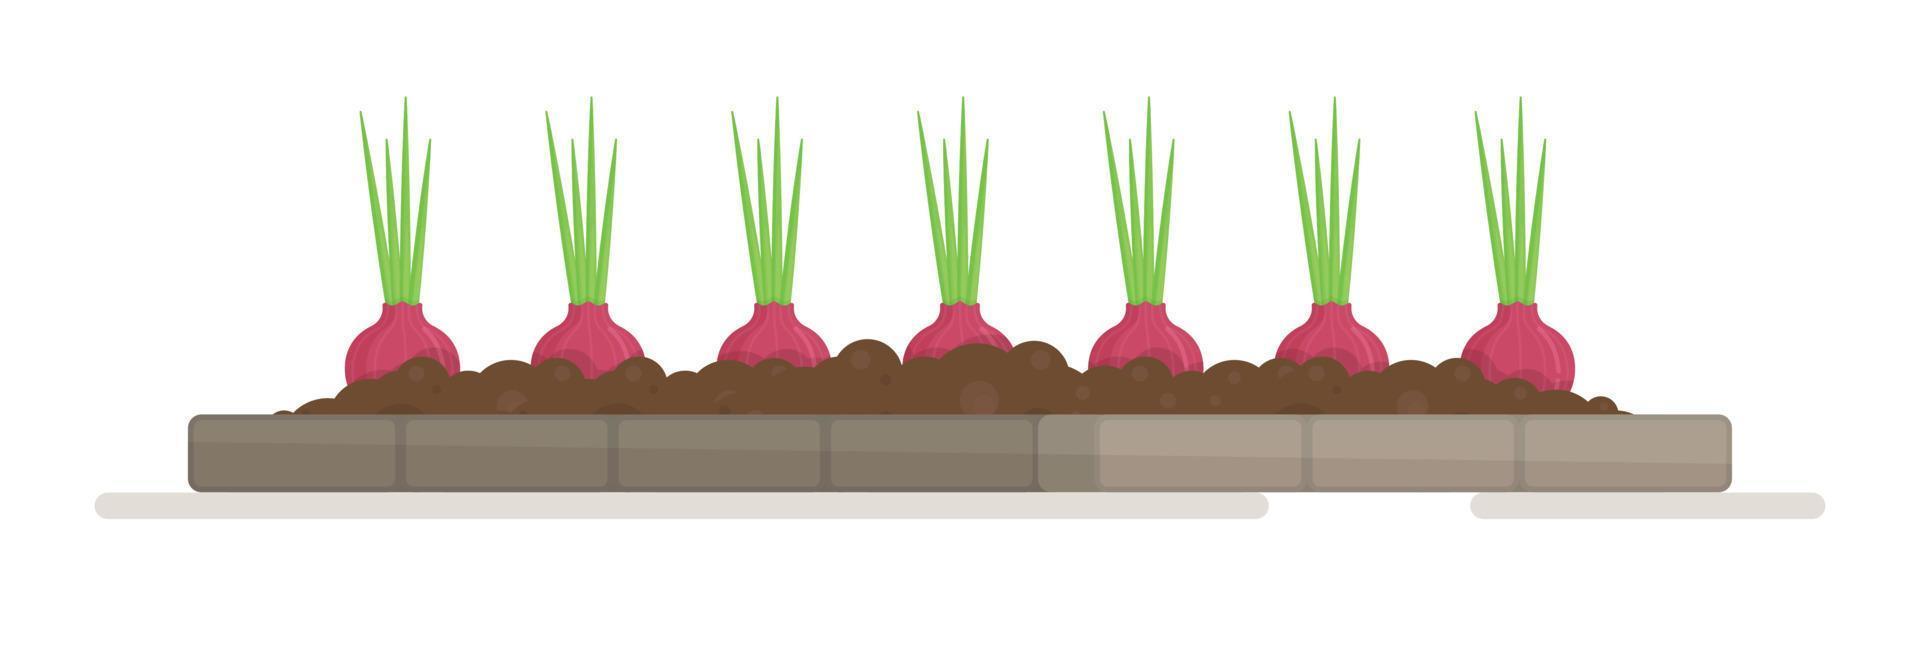 un letto di cipolle e ravanelli. illustrazione vettoriale di piantare piantine nell'orto. il lavoro di un giardiniere.